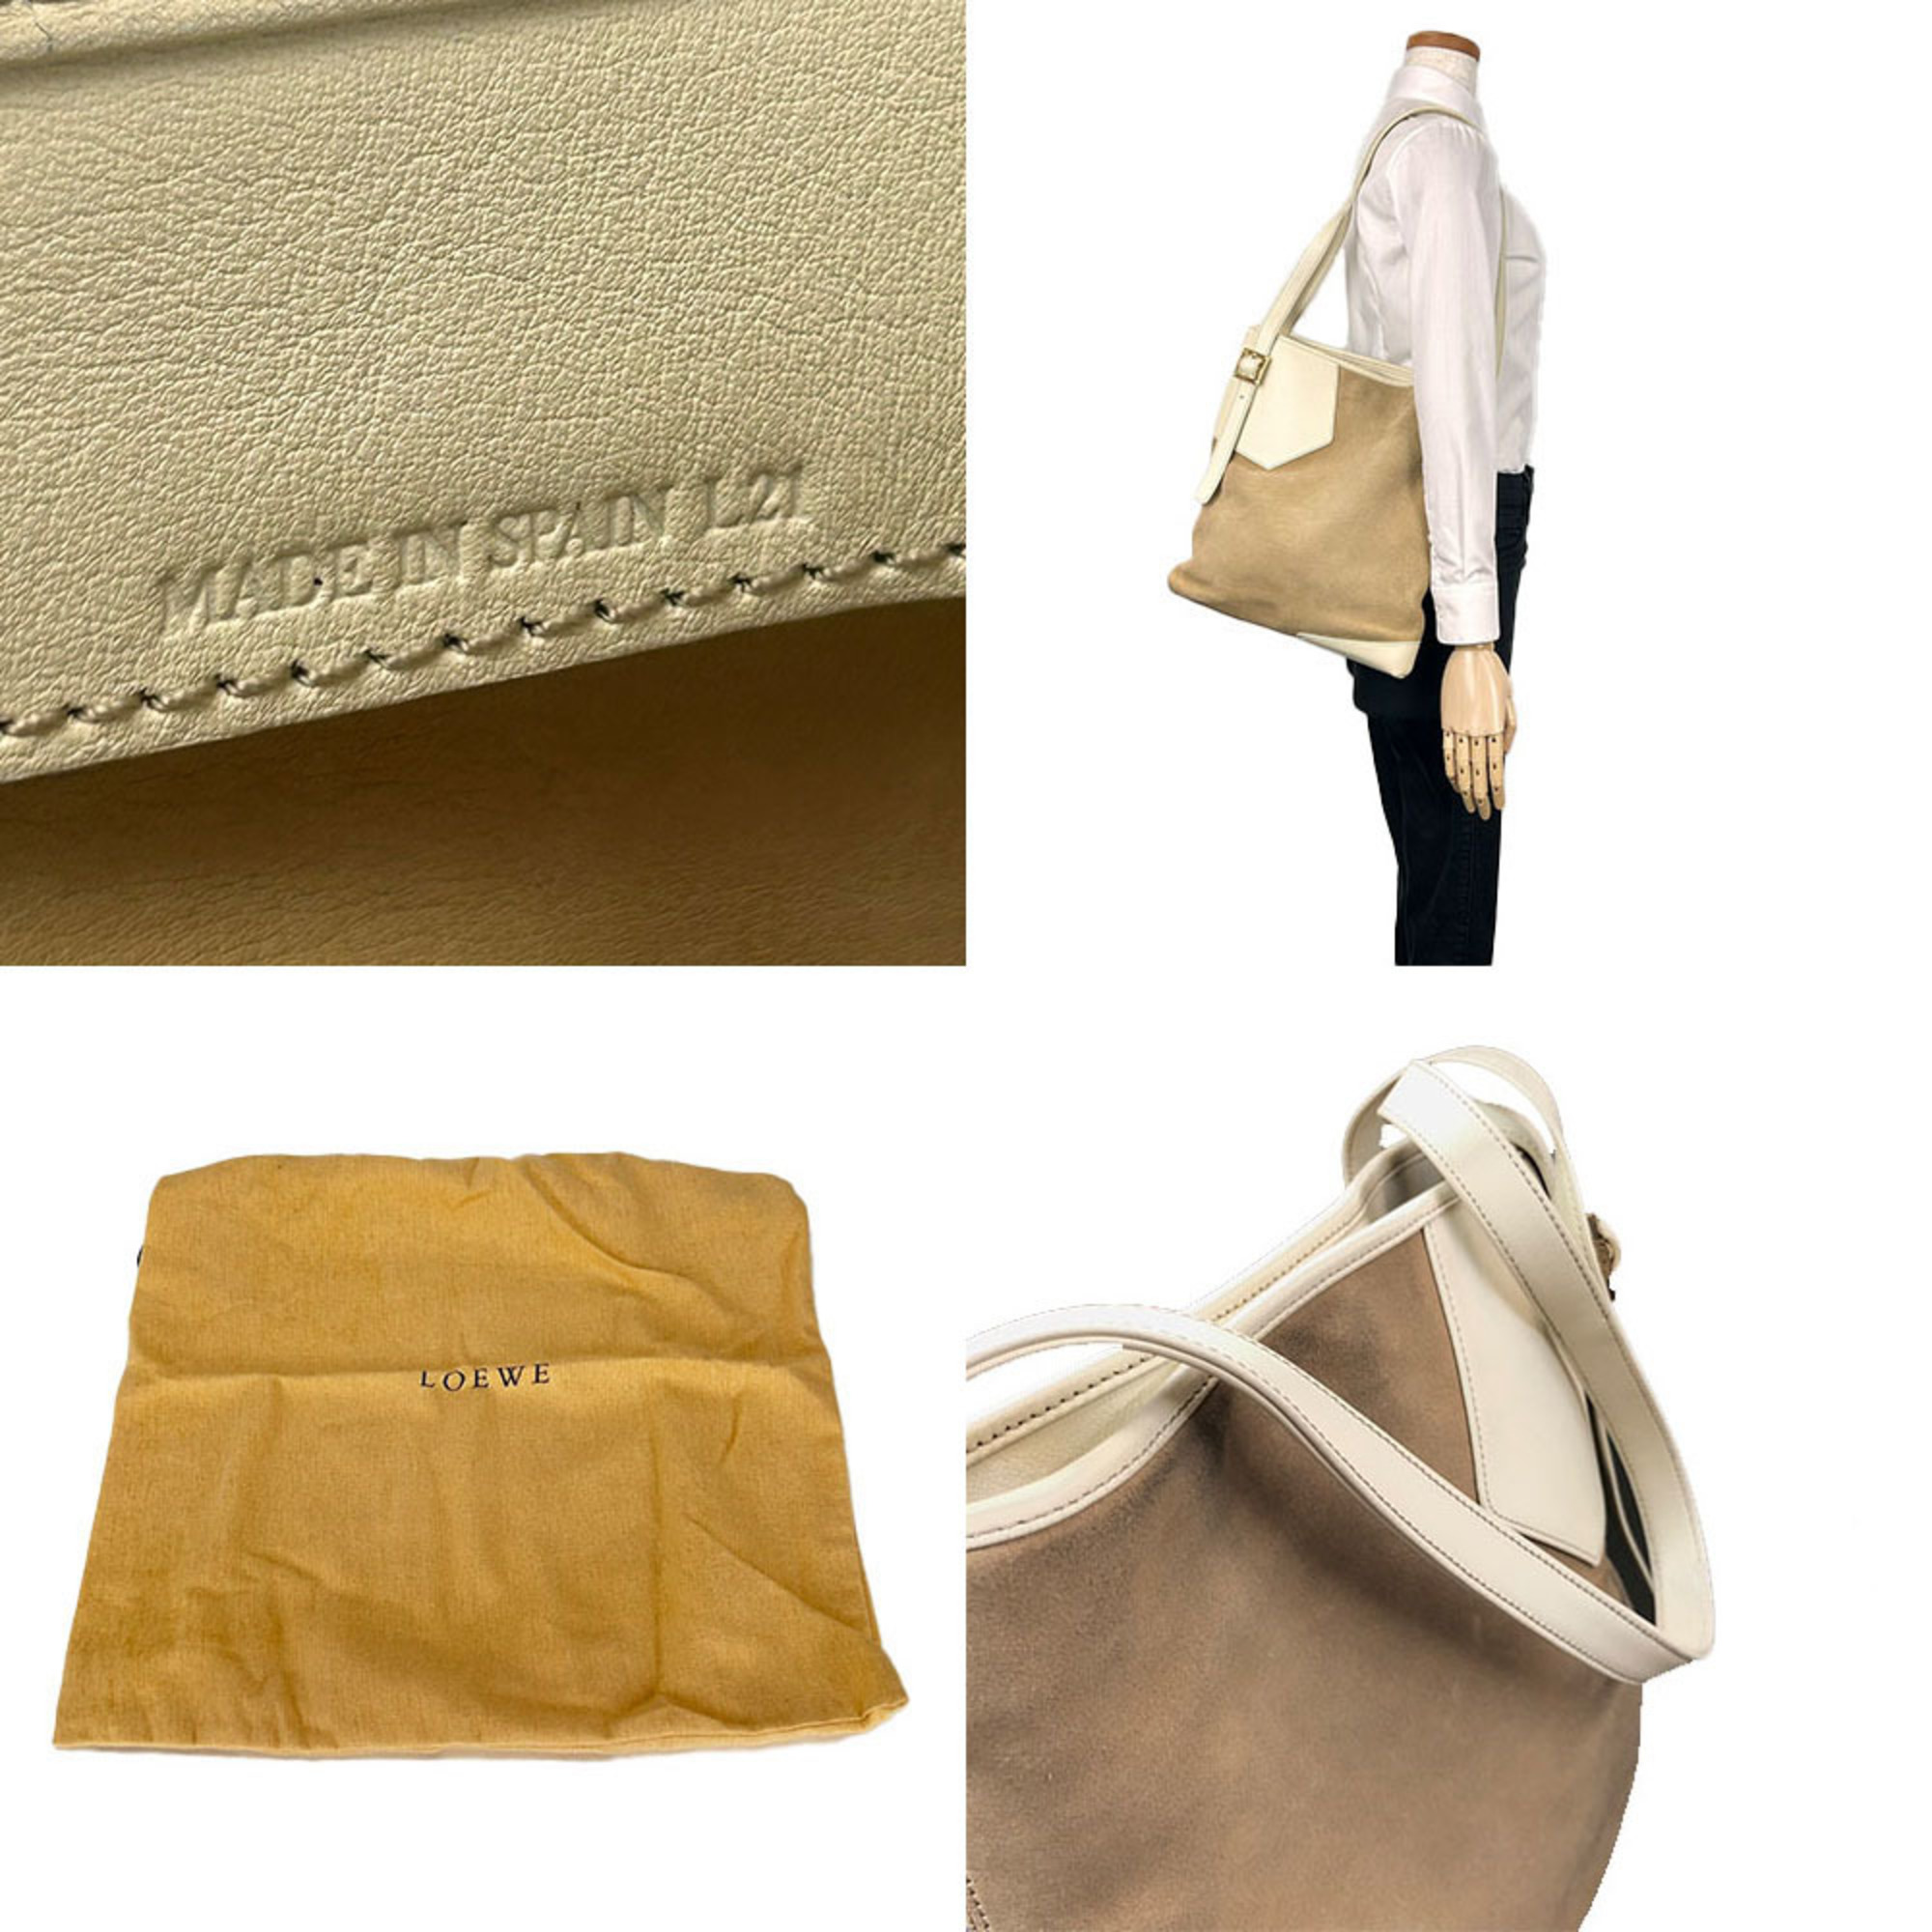 LOEWE one shoulder bag Anagram suede leather beige ivory ladies